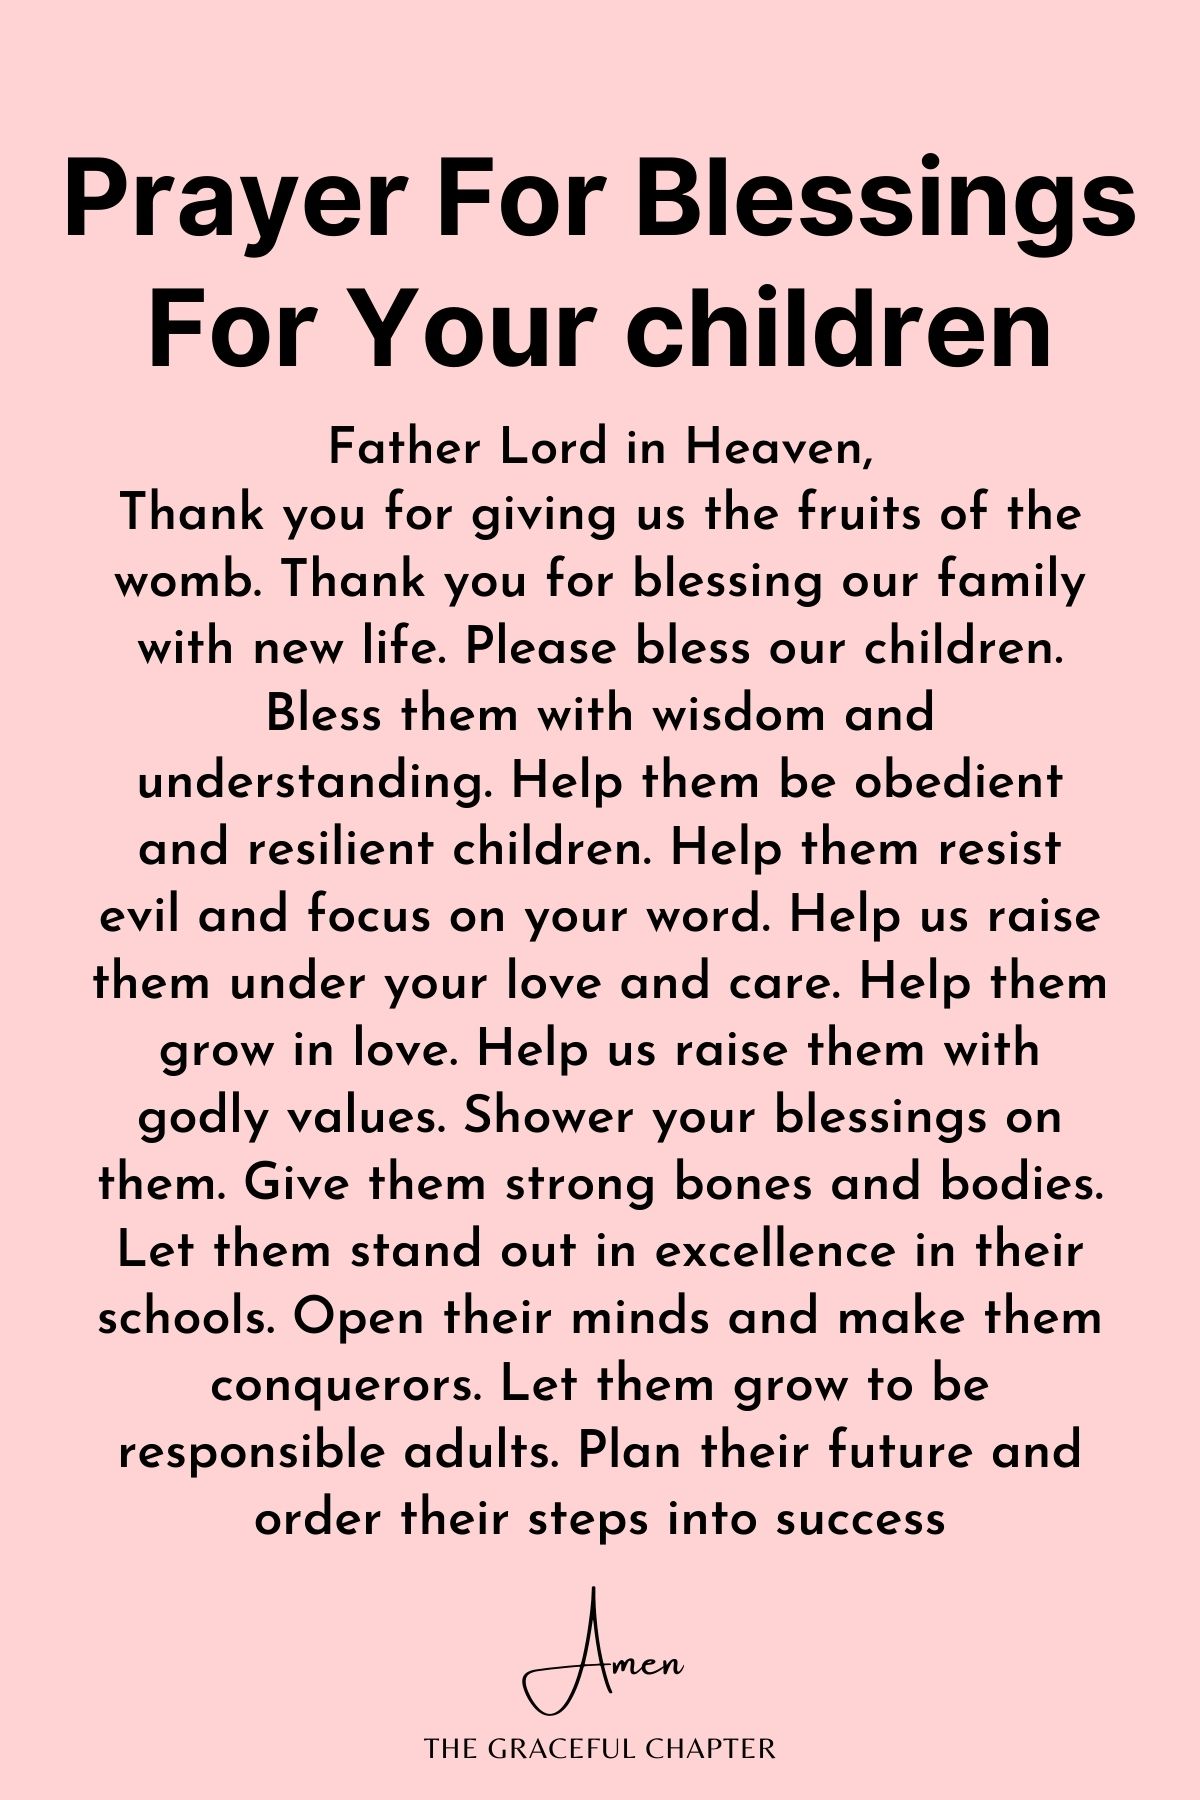 Prayer for blessings for your children